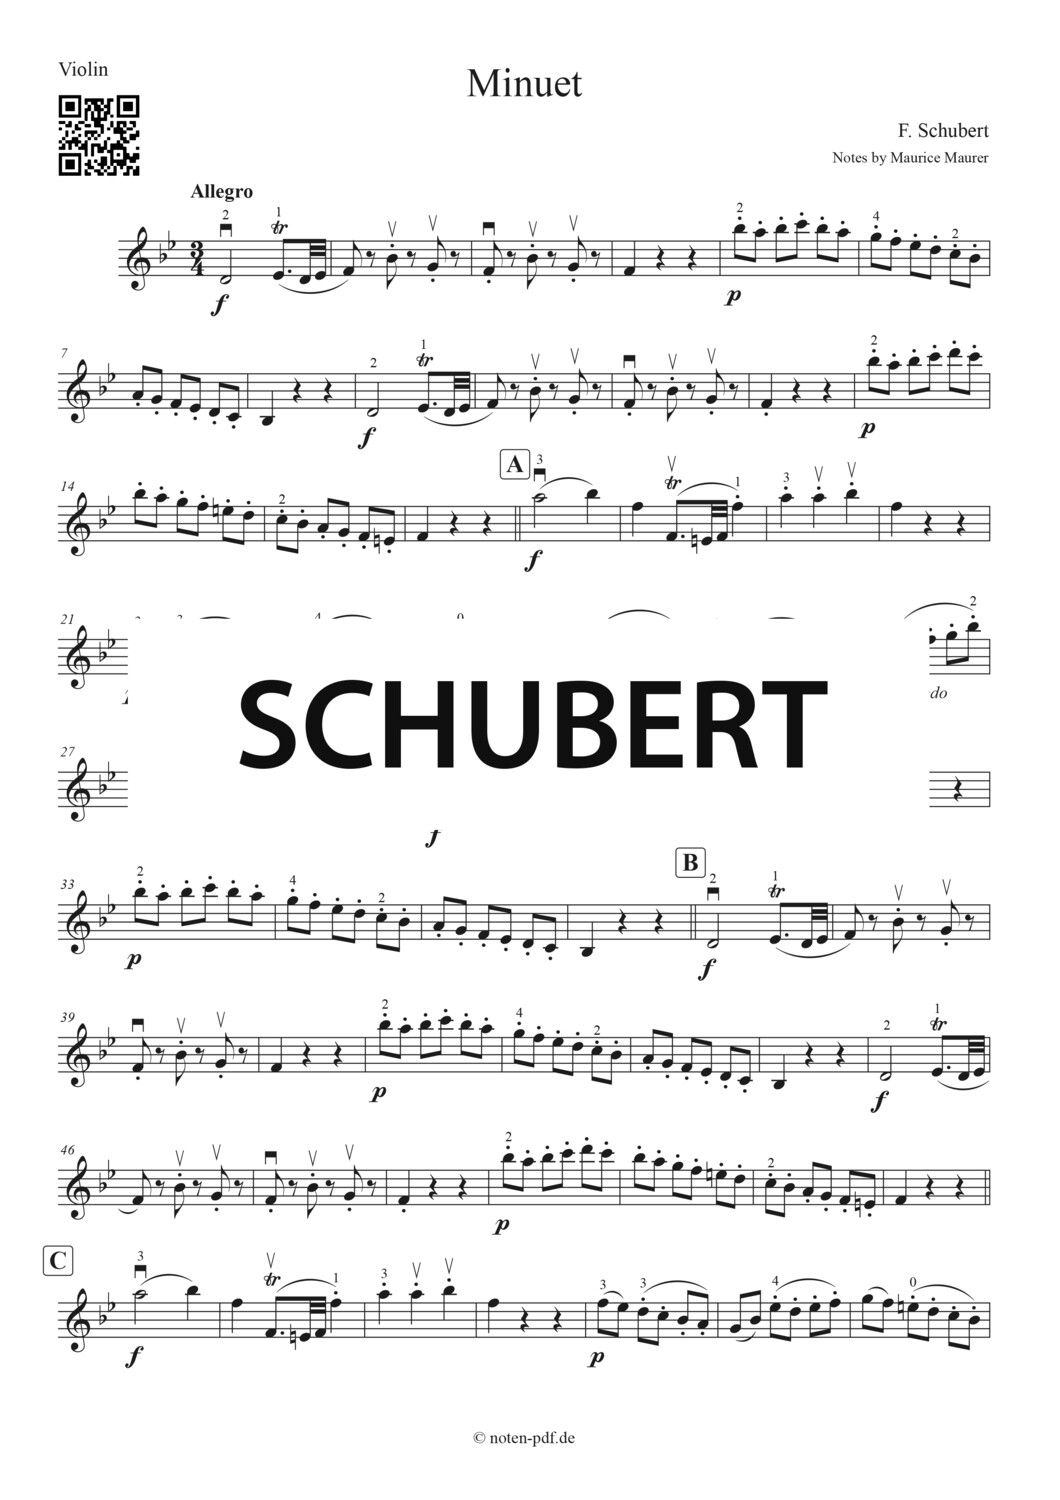 Schubert: Minuet